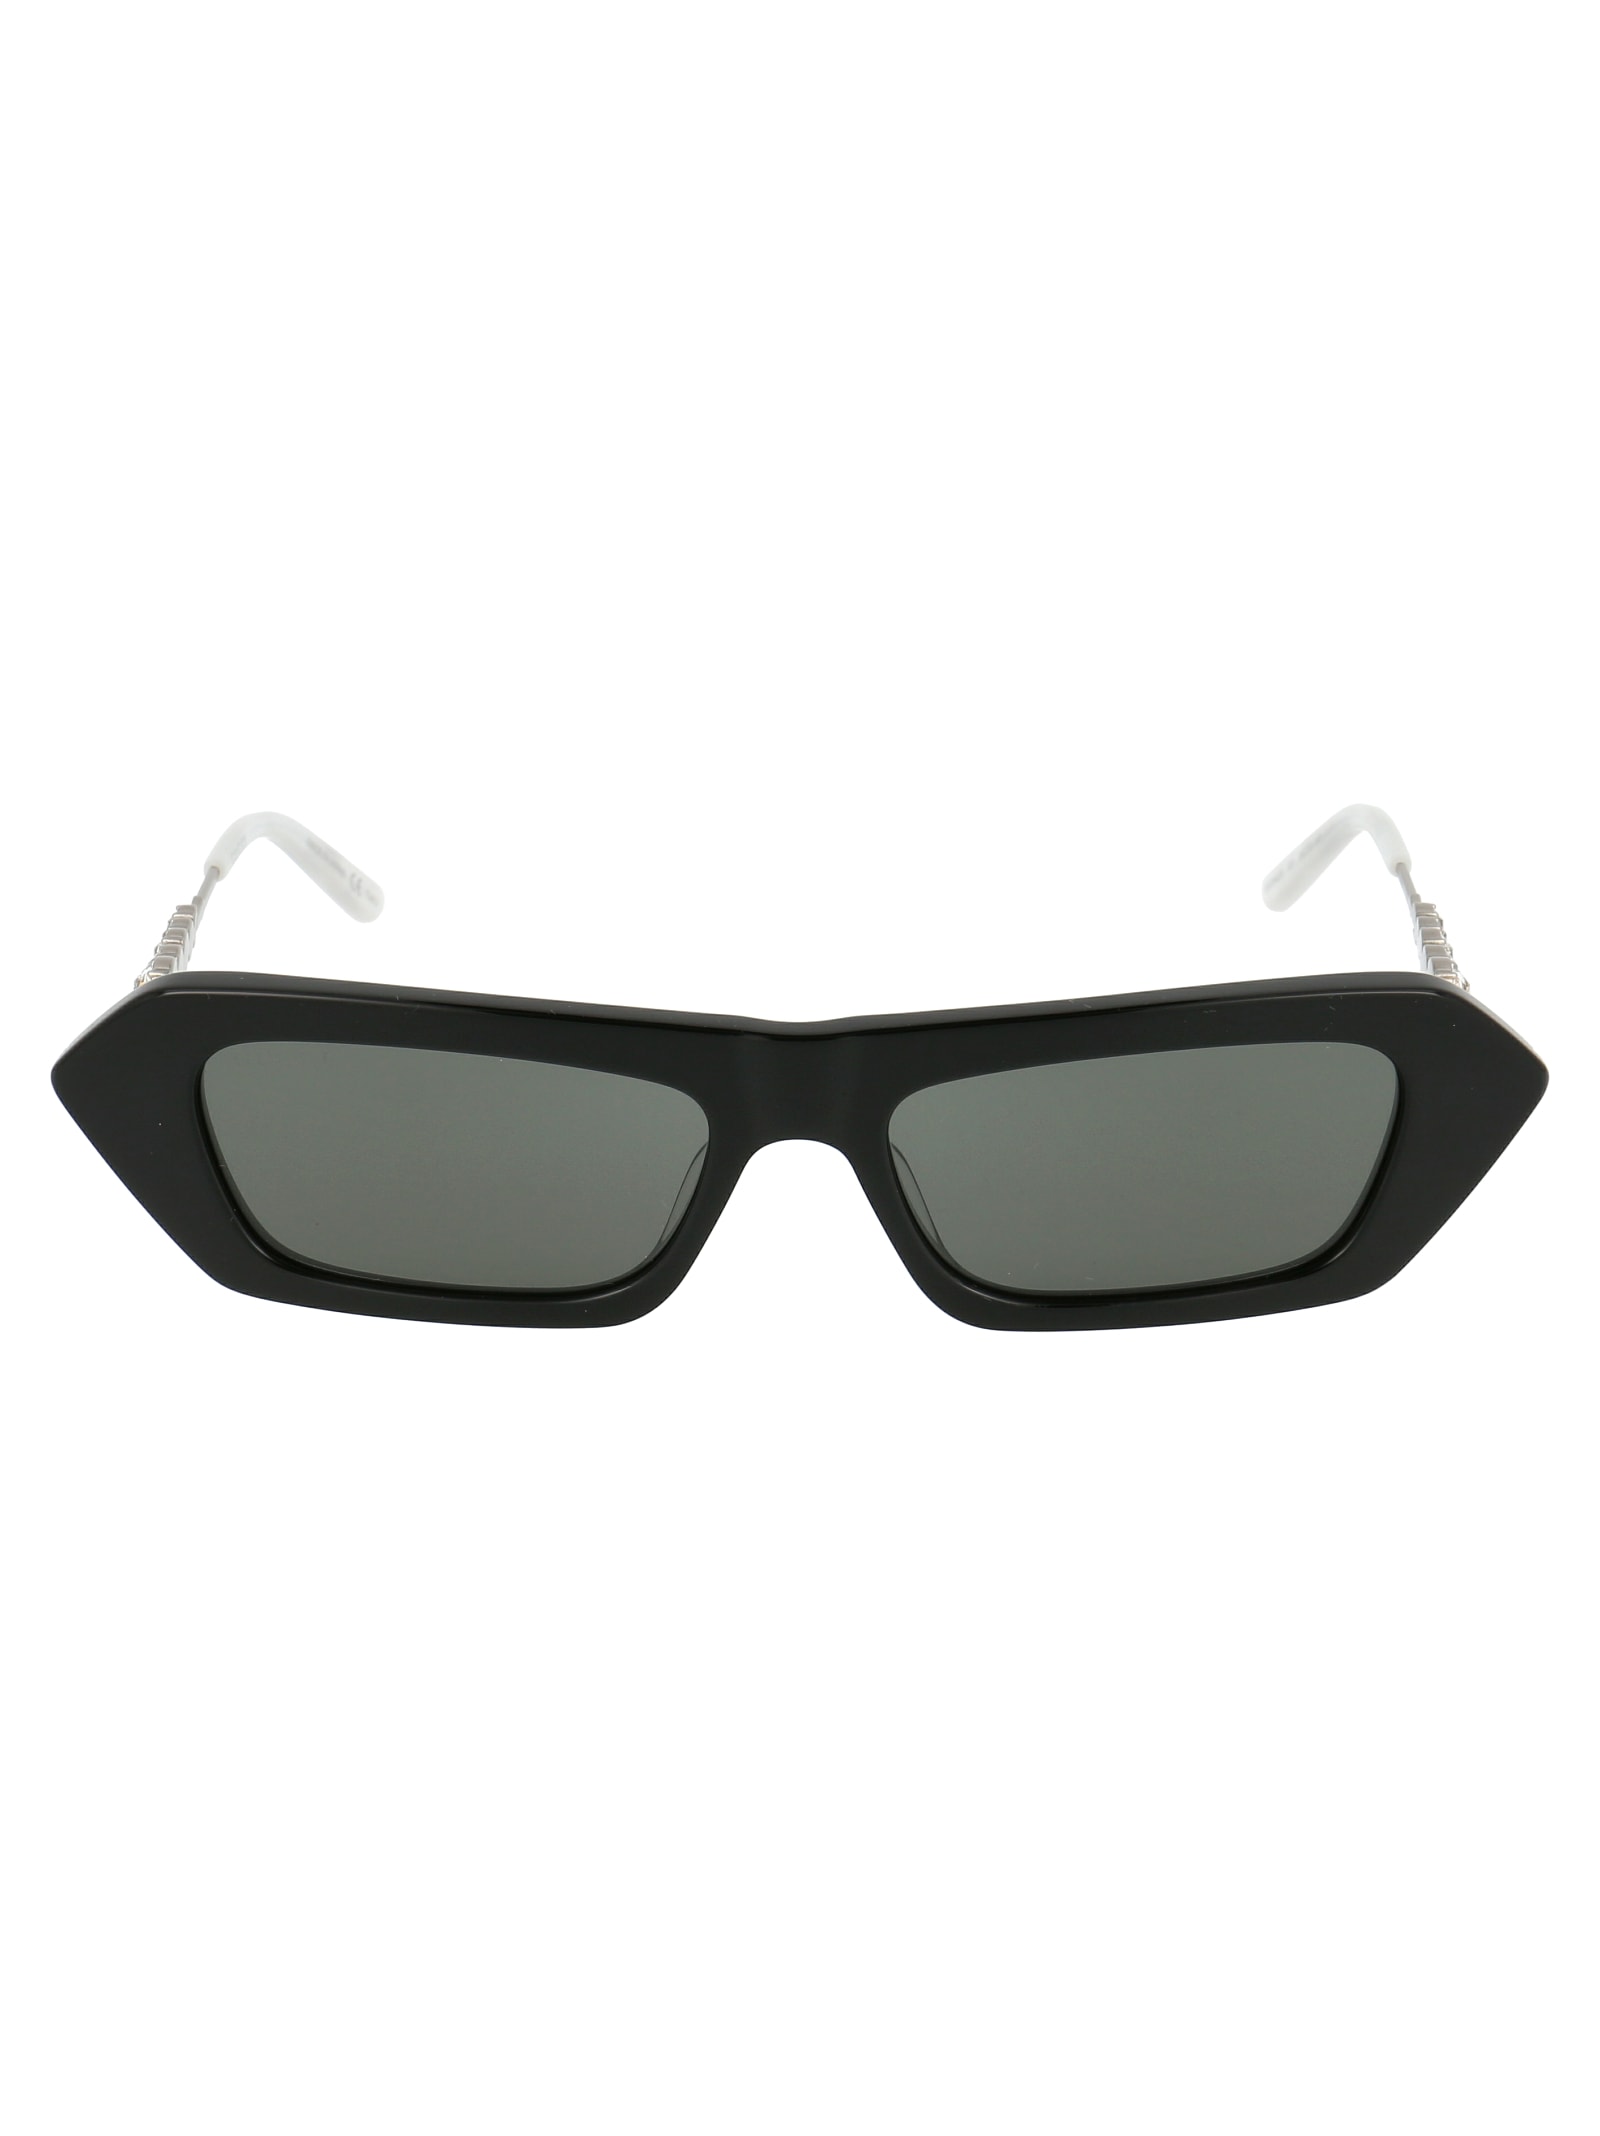 Gucci Sunglasses In Black Silver Grey